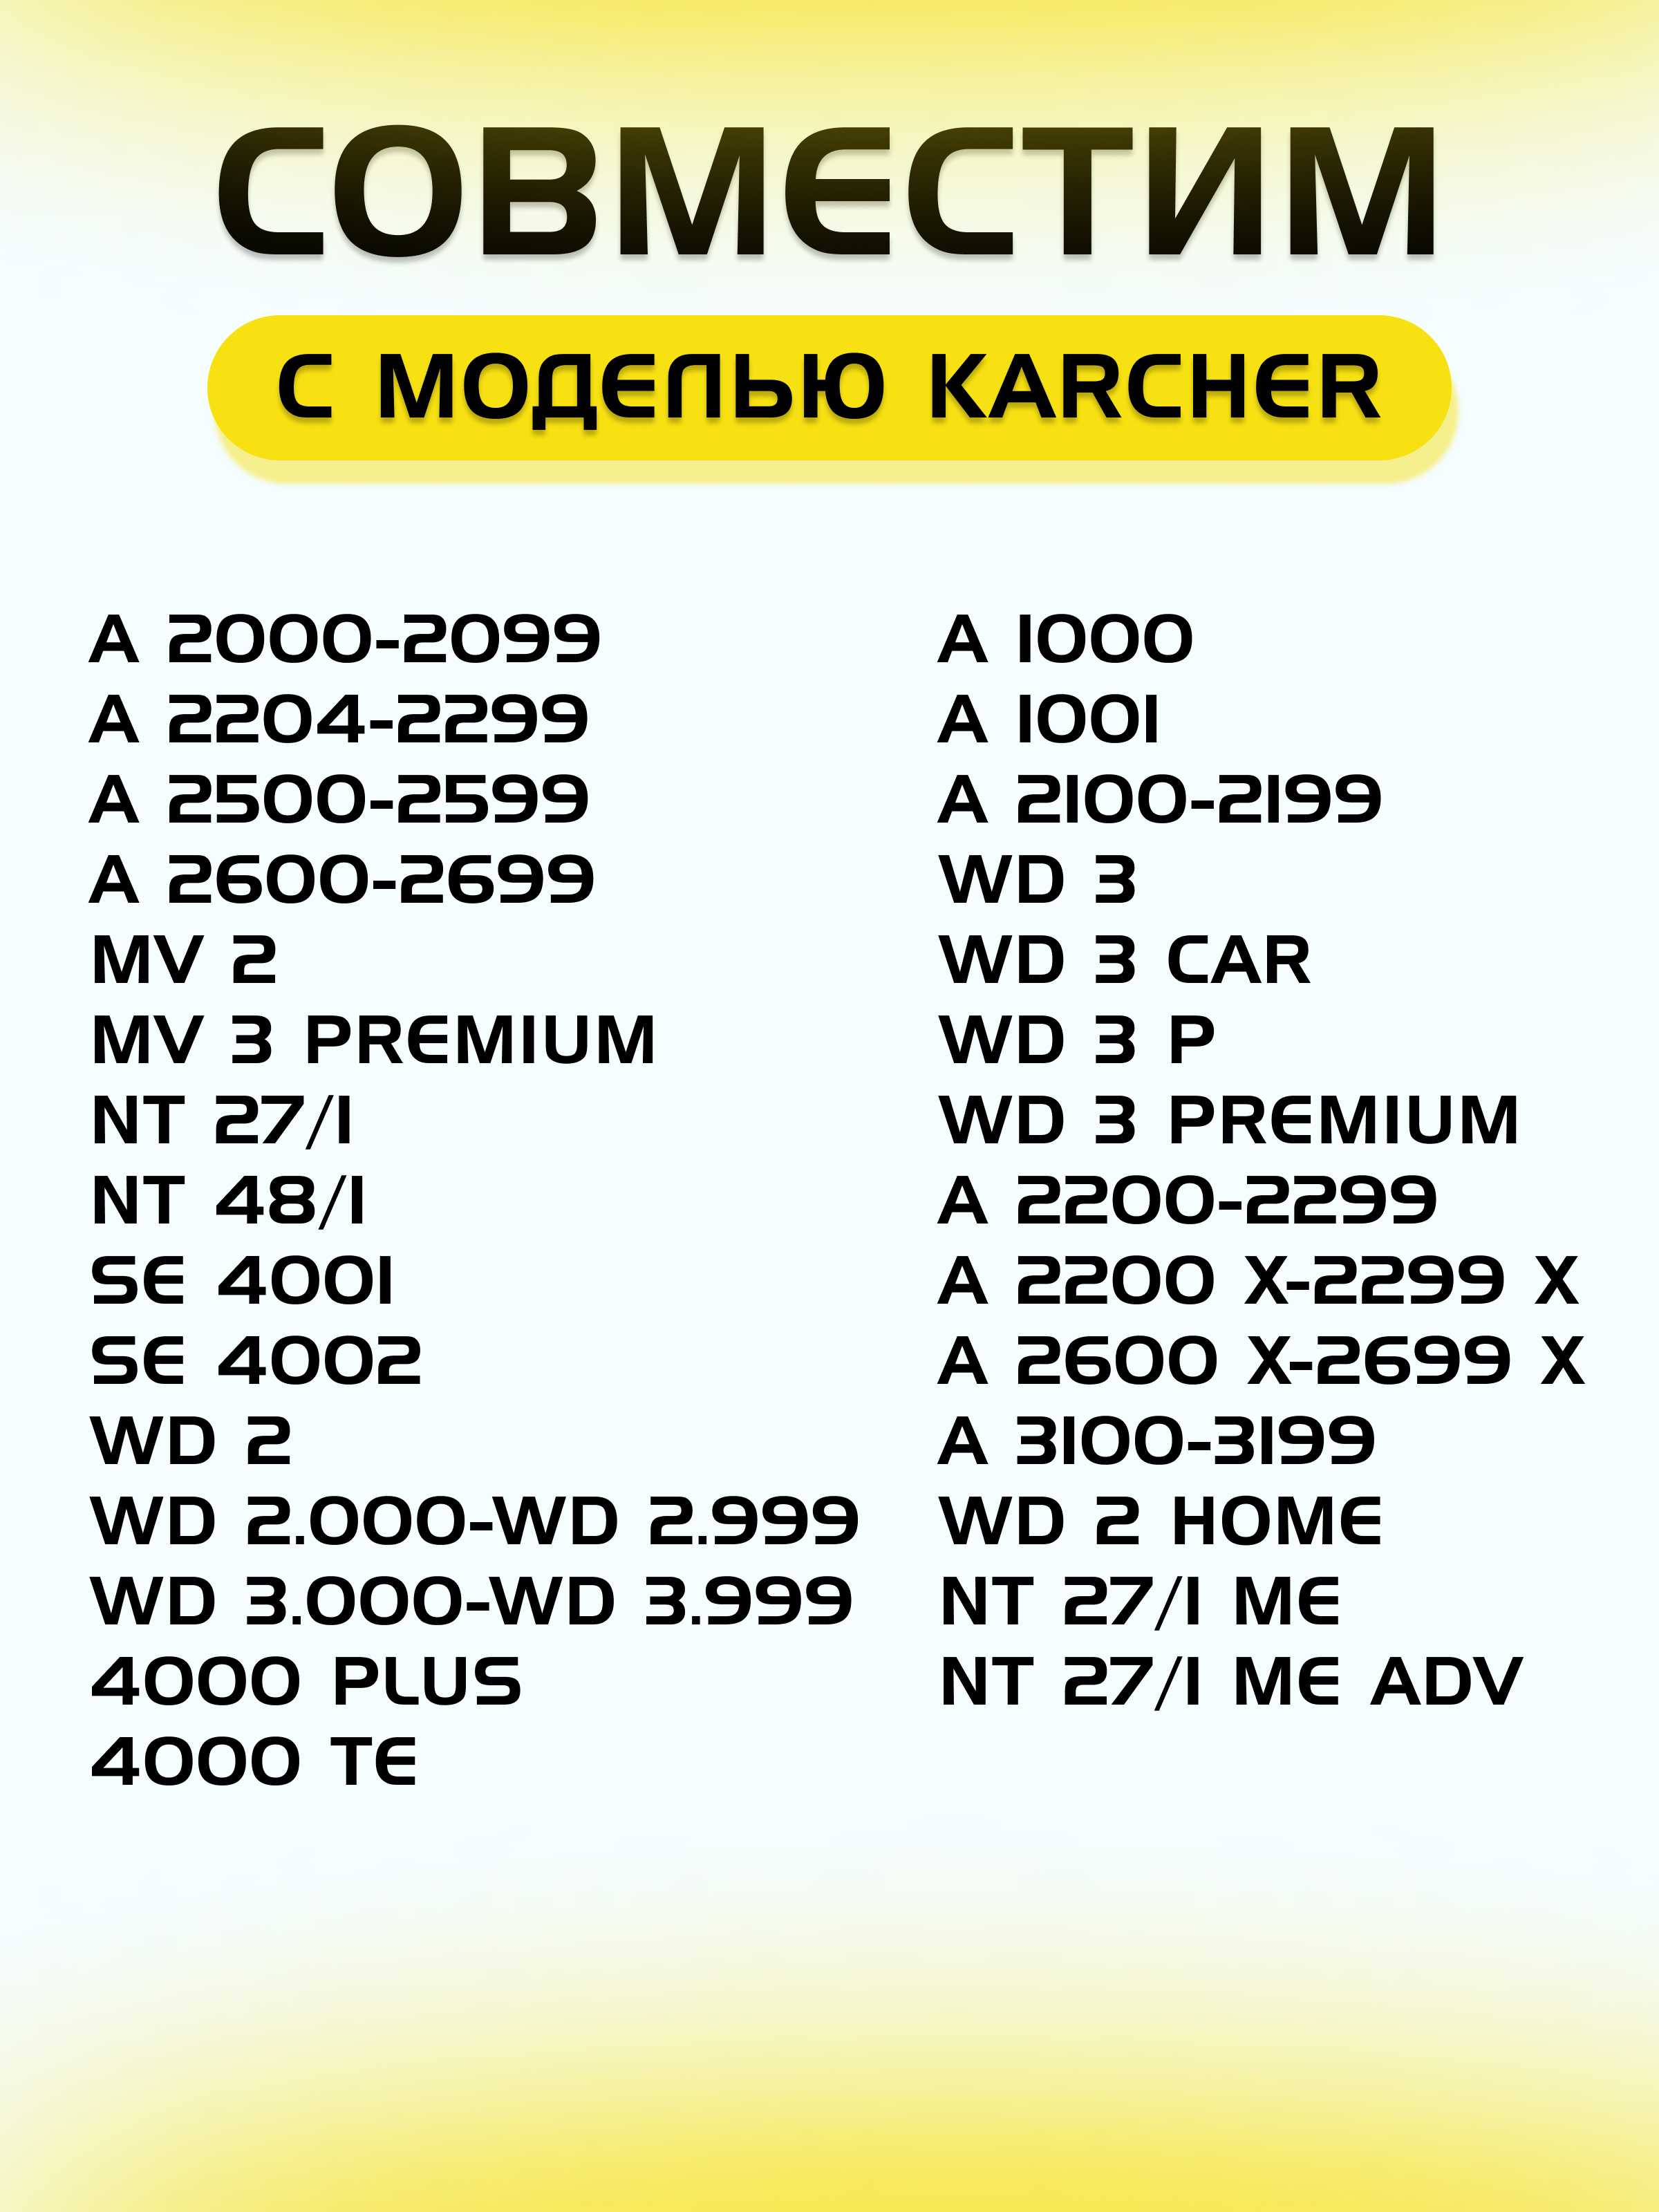 Нера стандартный фильтр складчатый для пылесоса Karcher (Керхер) MV2, MV3, WD3, WD2, D2250, WD3.200, 6.414-552.0 для SE / WD / MV